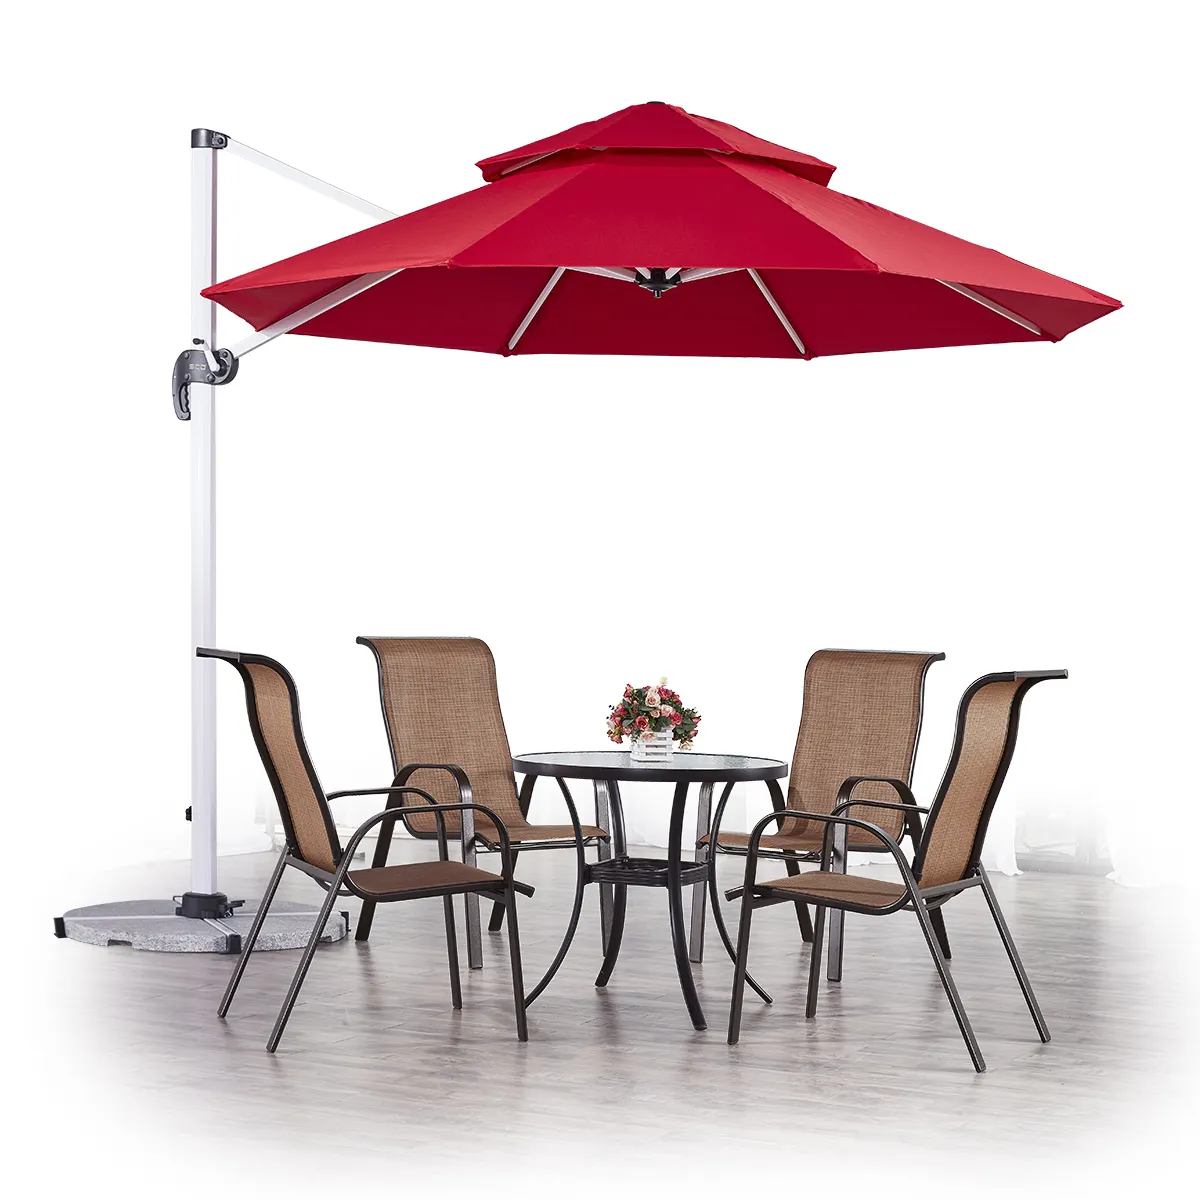 3*3 متر في الهواء الطلق حديقة الباحة مطعم المسبح الروماني المظلة بالجملة مظلة الألومنيوم مظلة للأماكن المفتوحة مظلة كبيرة للبيع